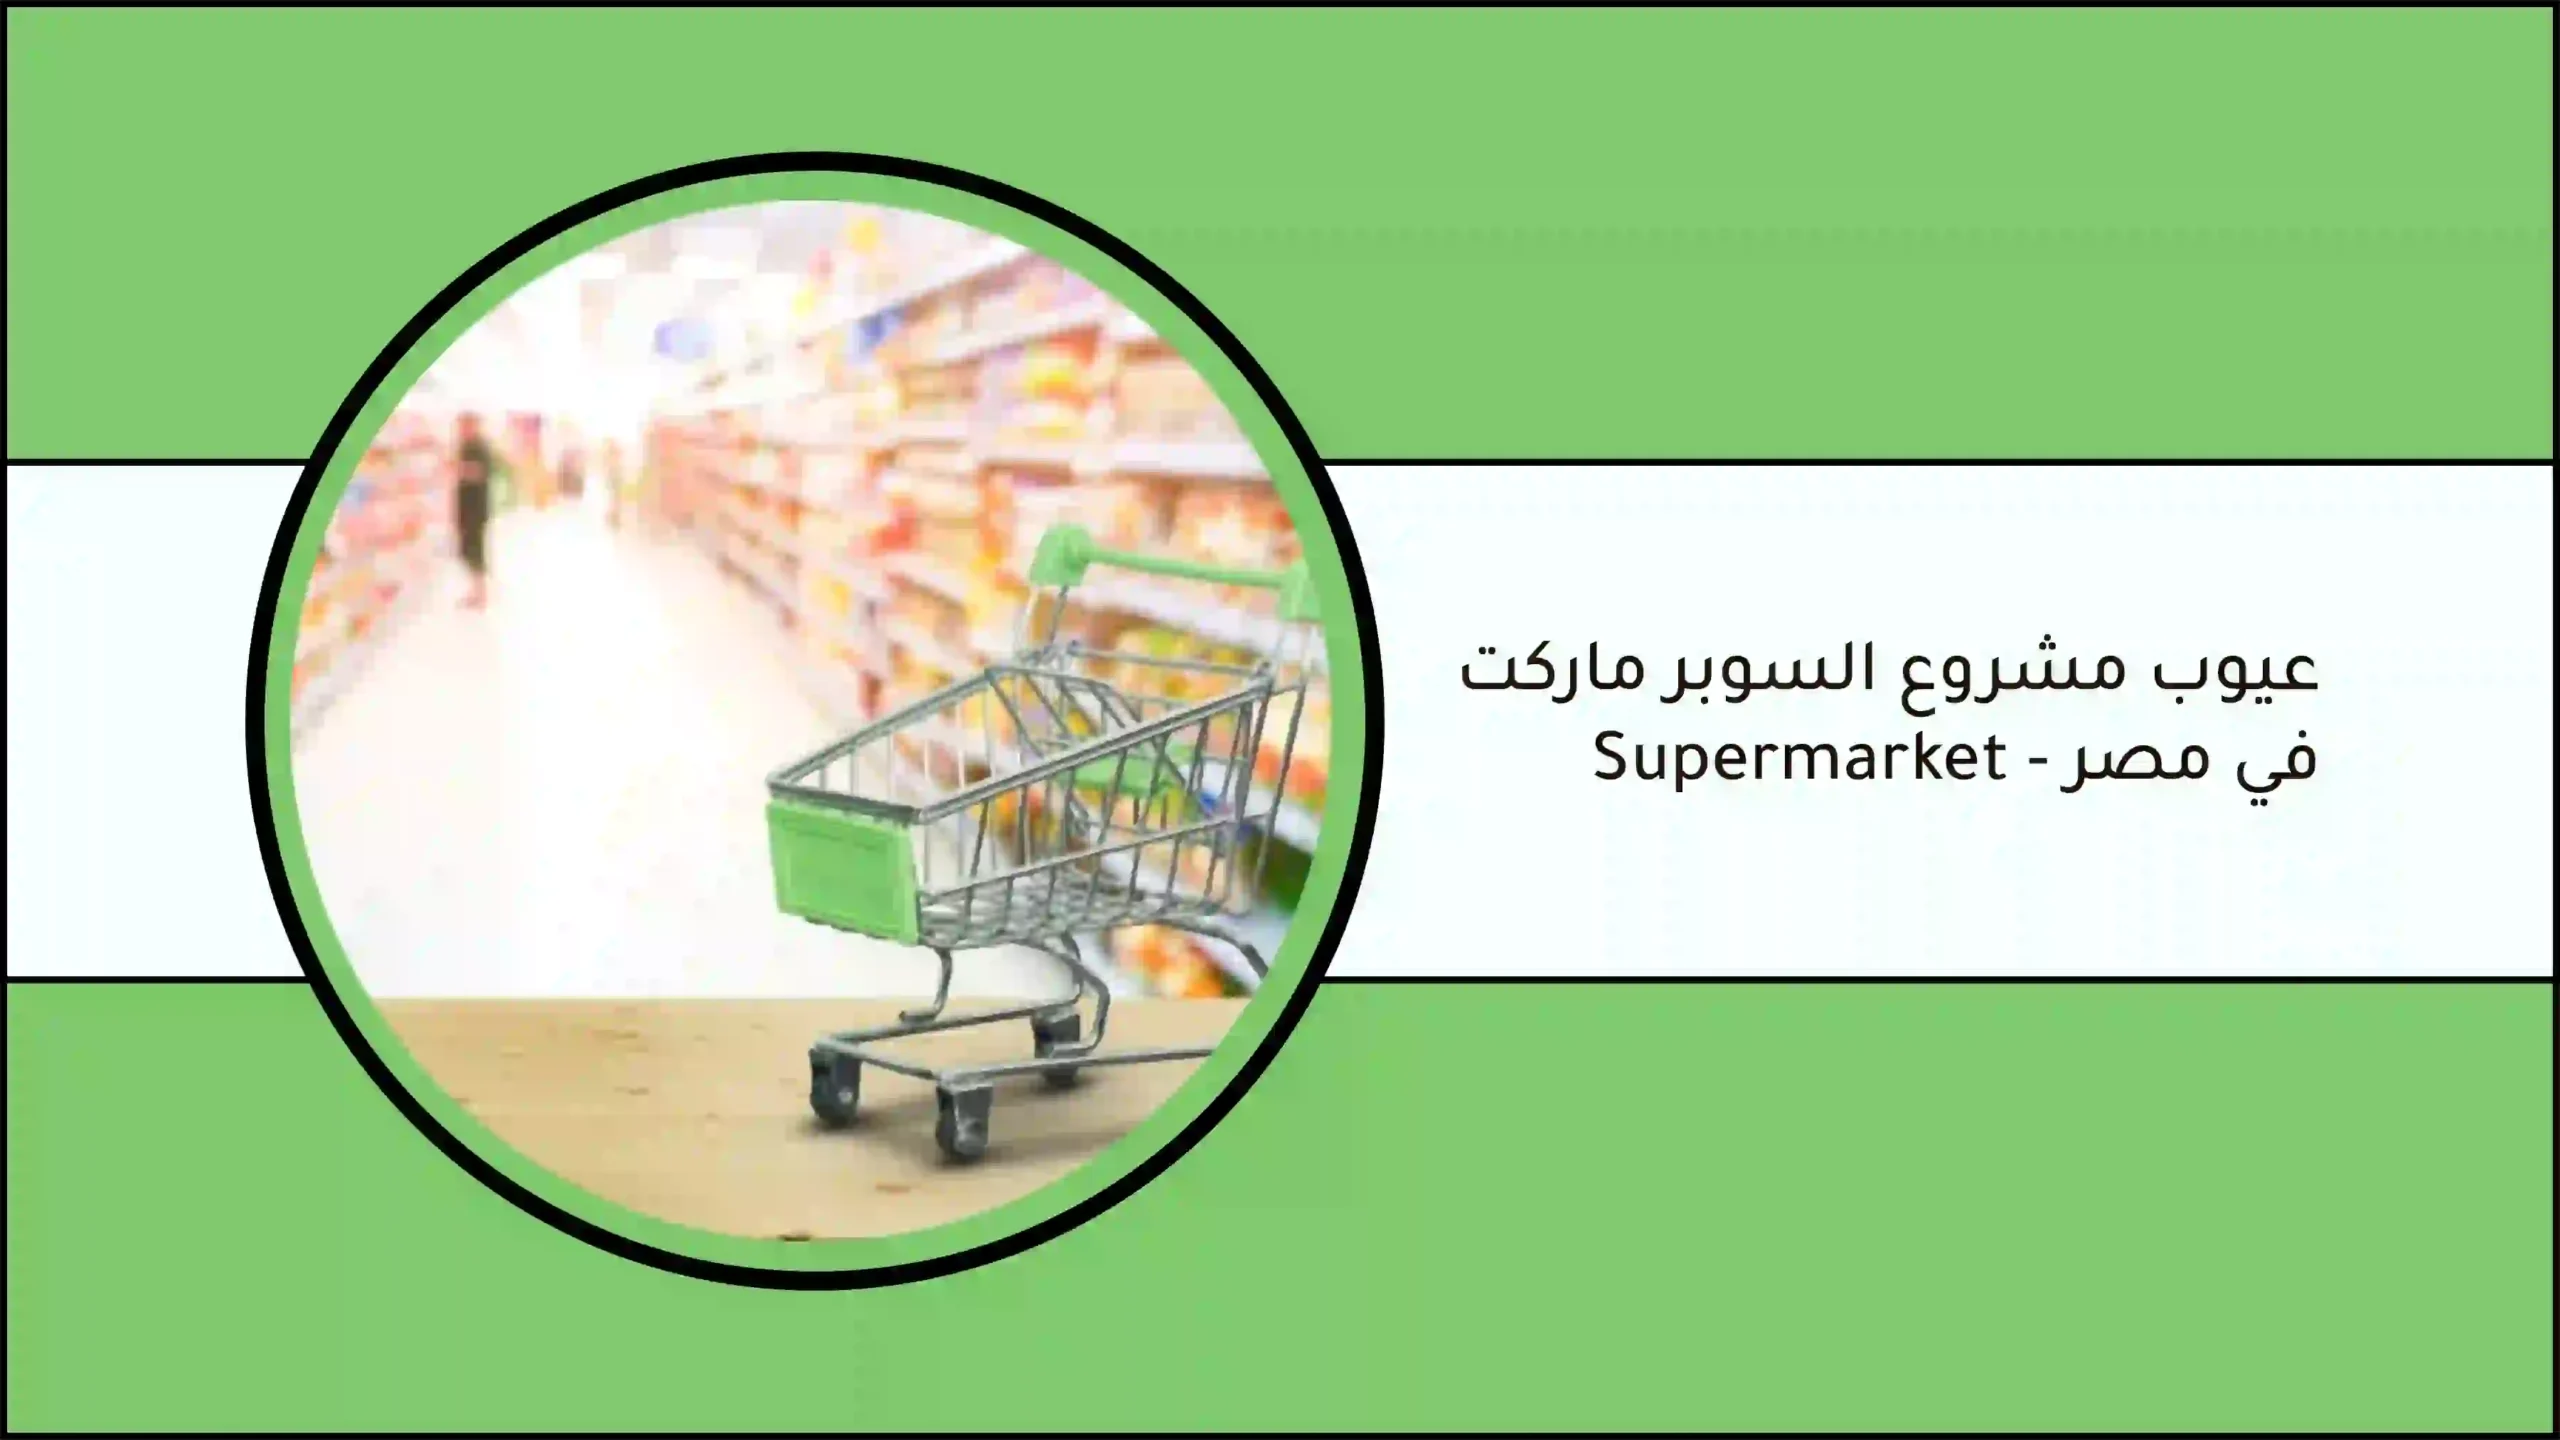 عيوب مشروع السوبر ماركت في مصر - ما هي عيوب سوبر ماركت - supermarket؟